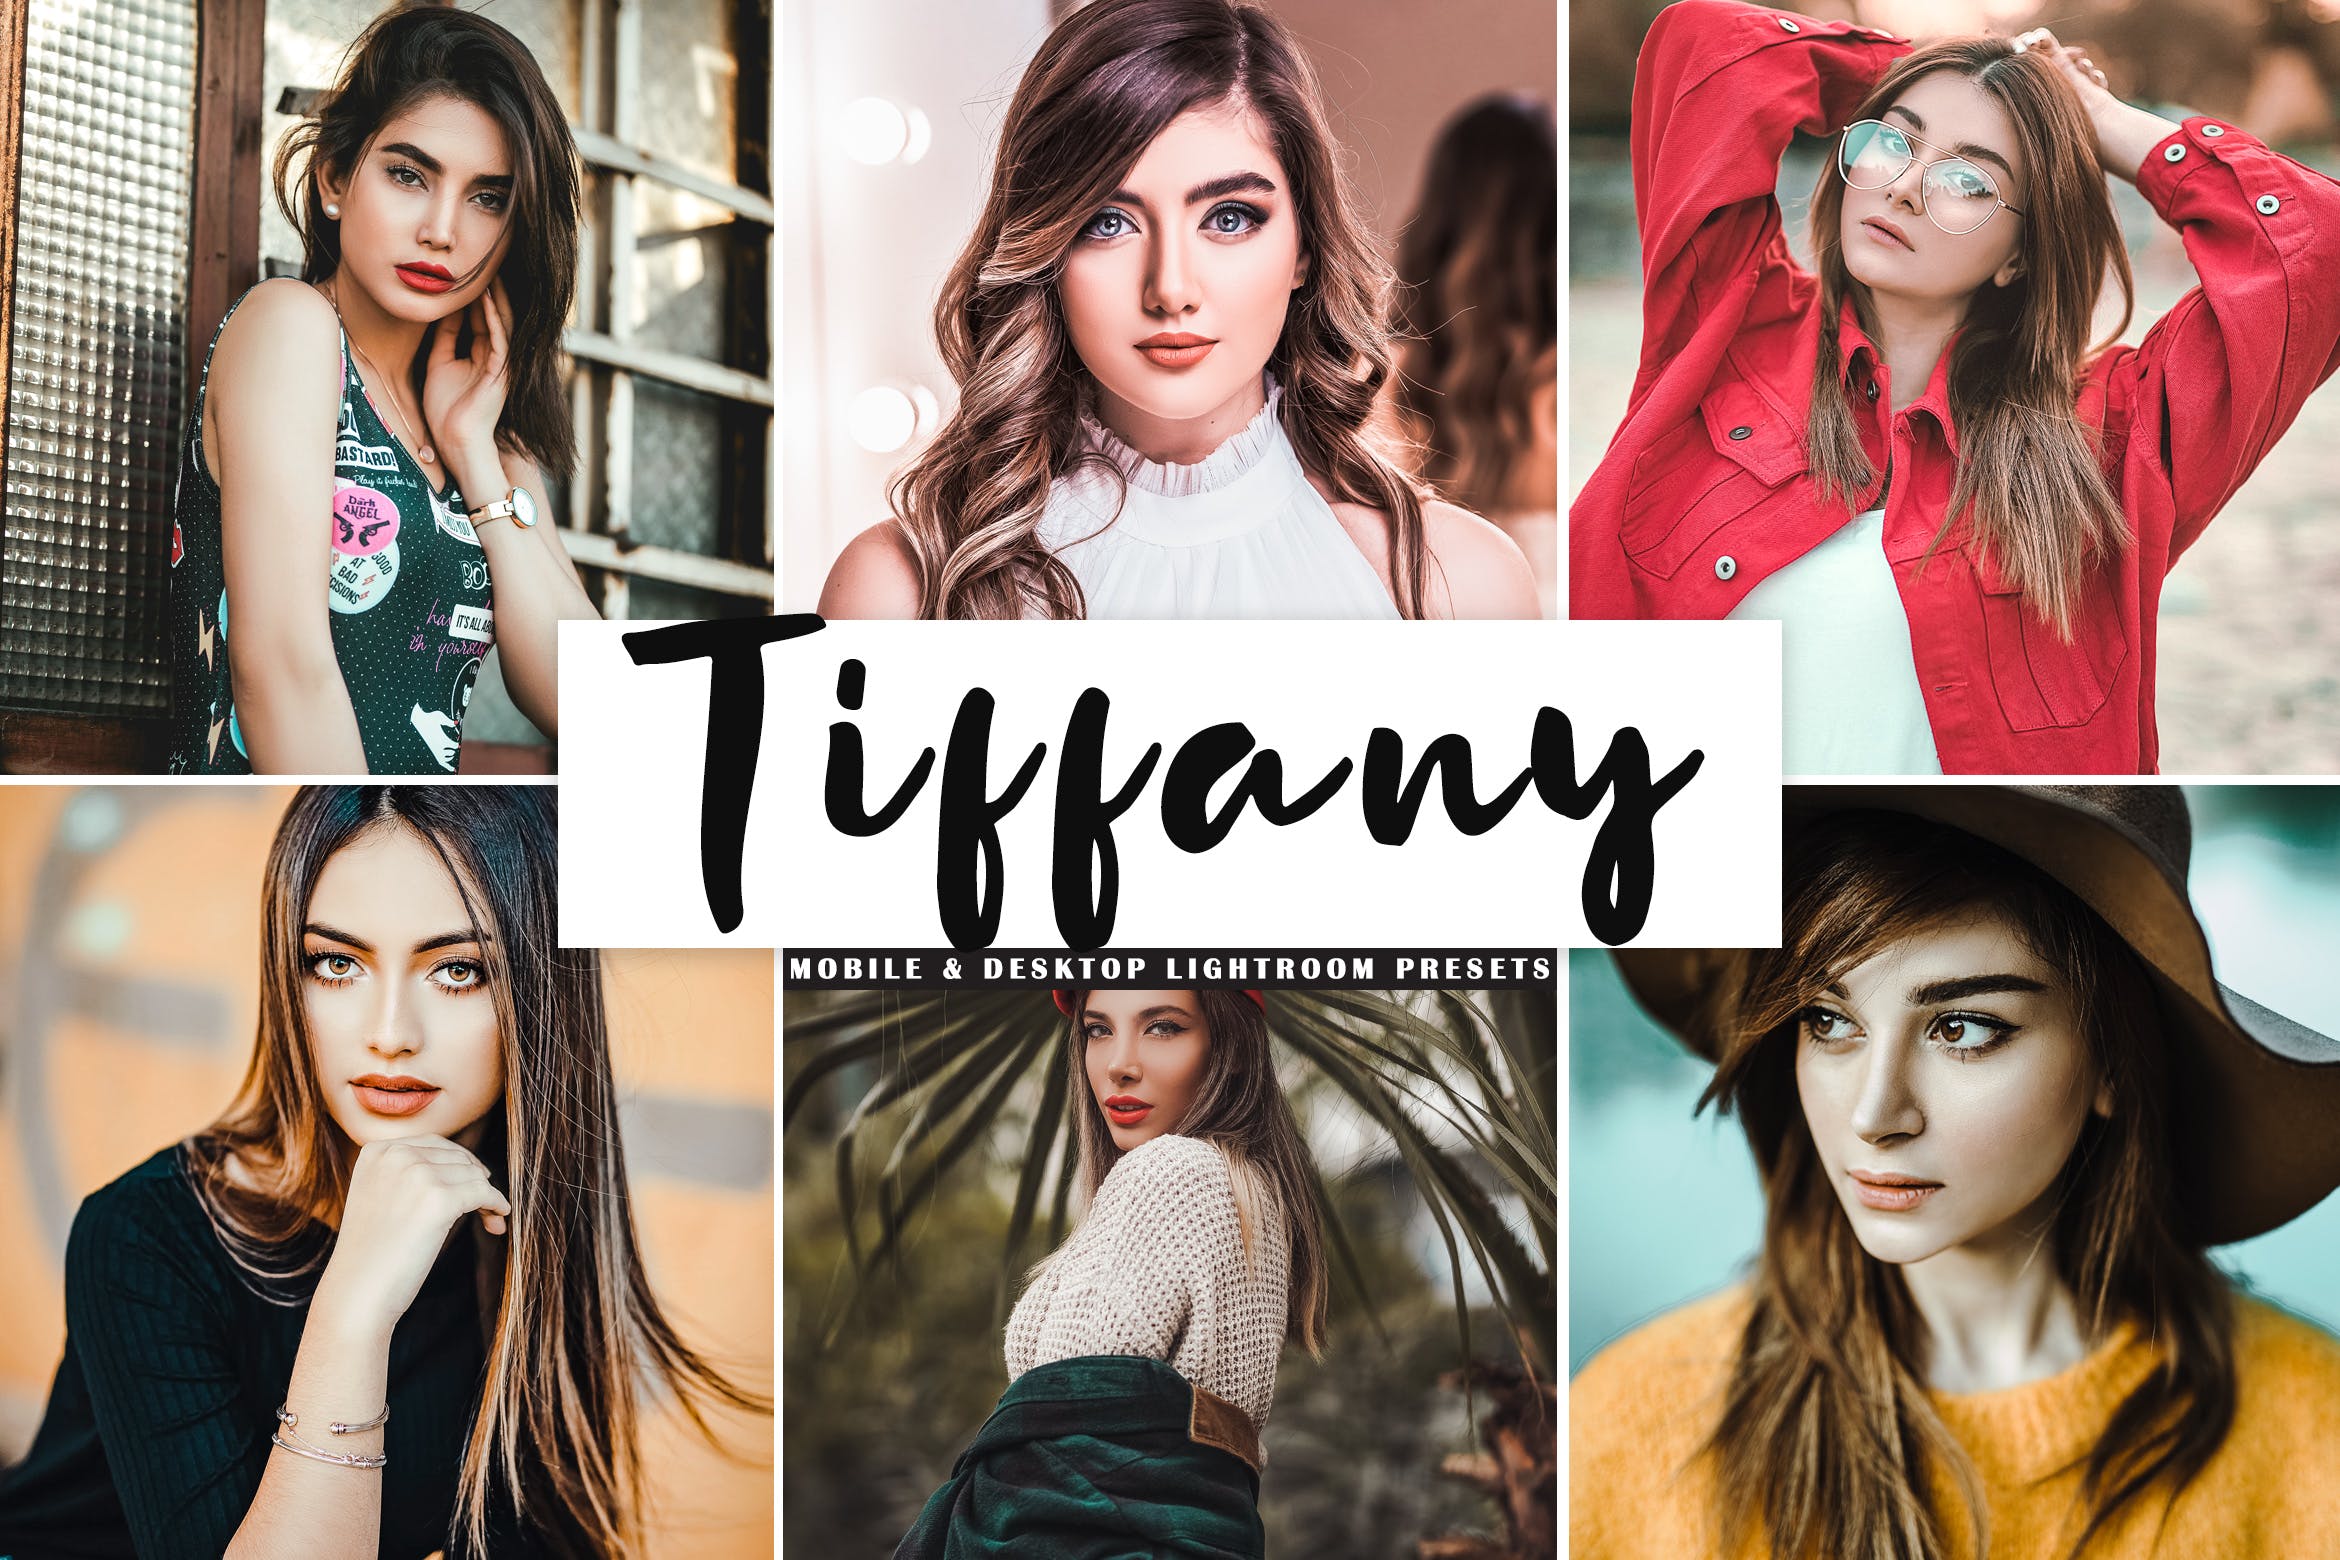 唯美暖色调肖像摄影后期处理16设计素材网精选LR预设 Tiffany Mobile & Desktop Lightroom Presets插图